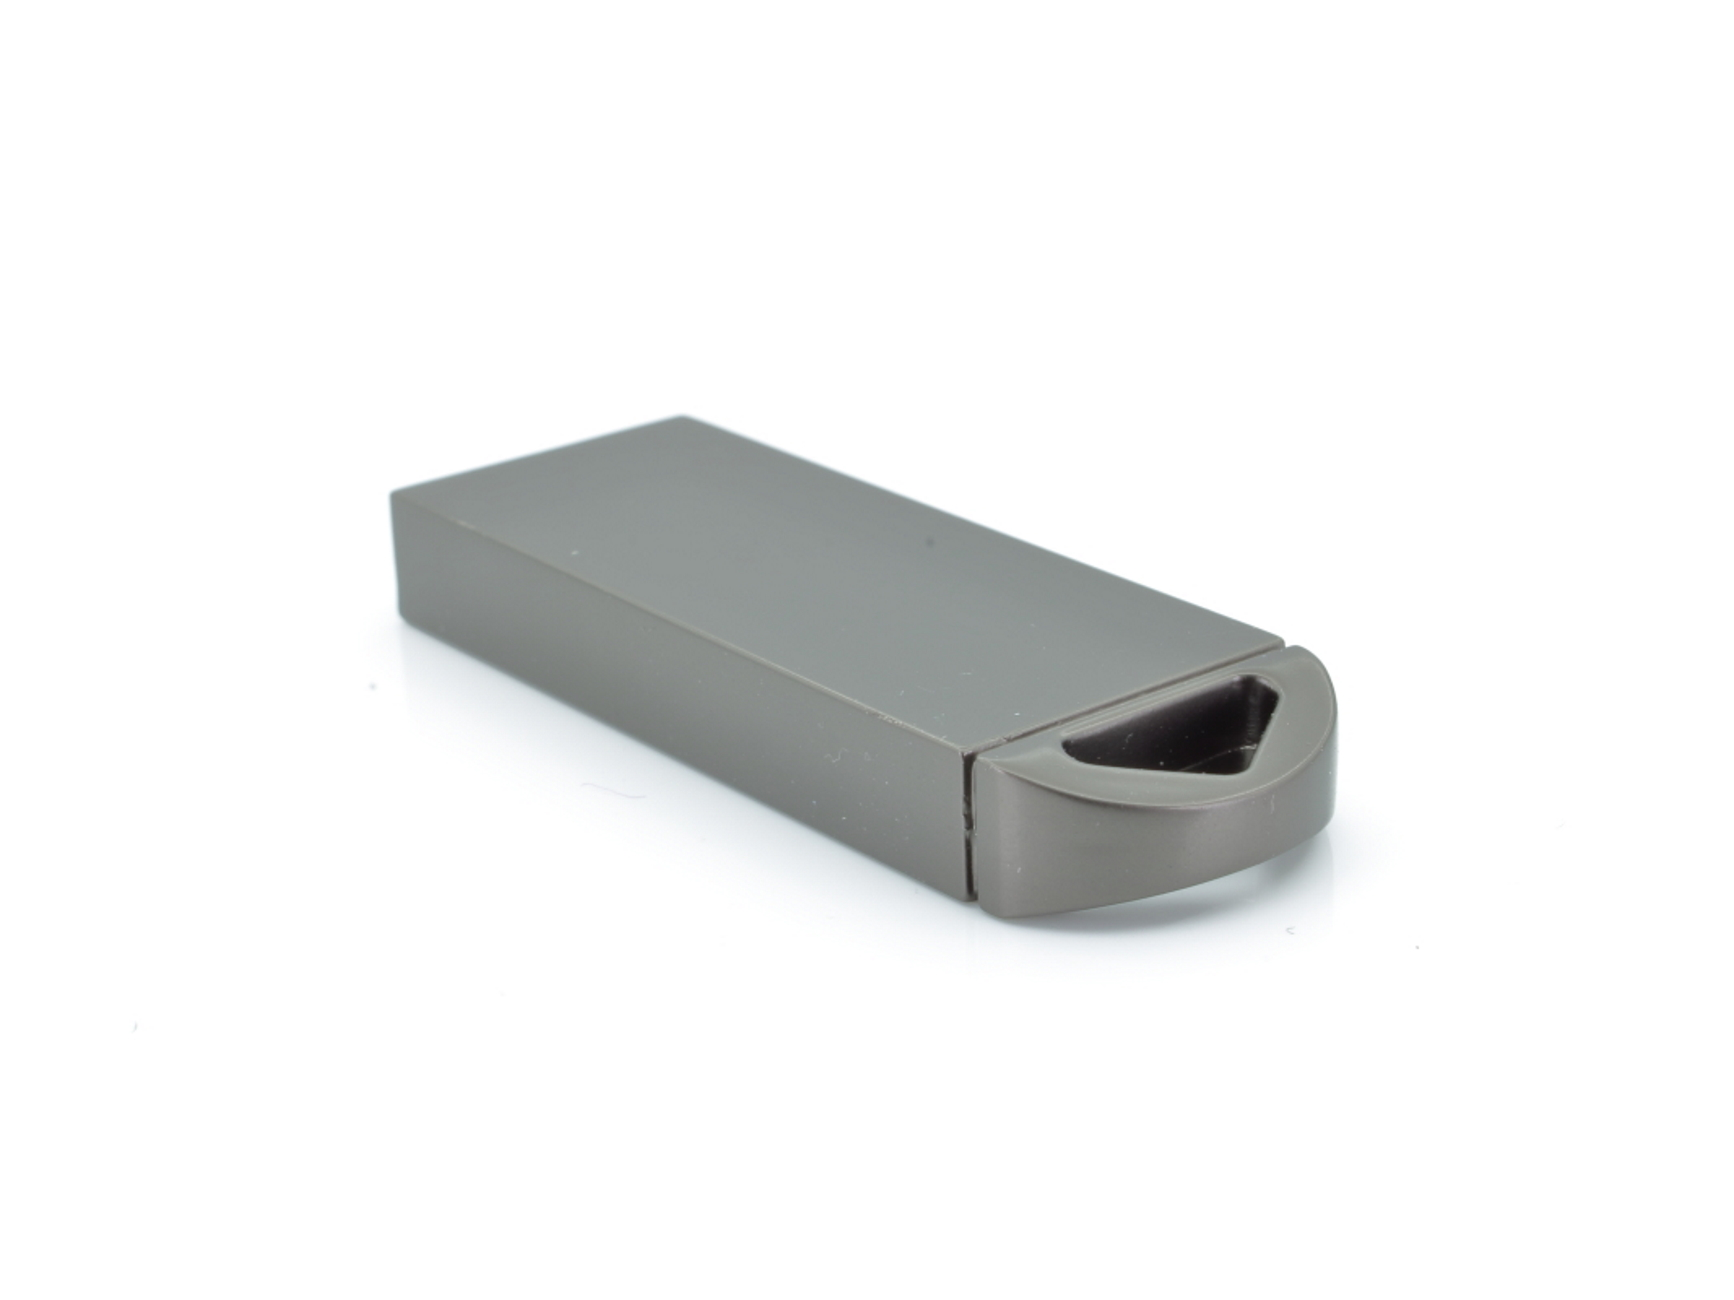 USB GERMANY (Graumetalic, ME14 4 USB-Stick ®Metall GB)